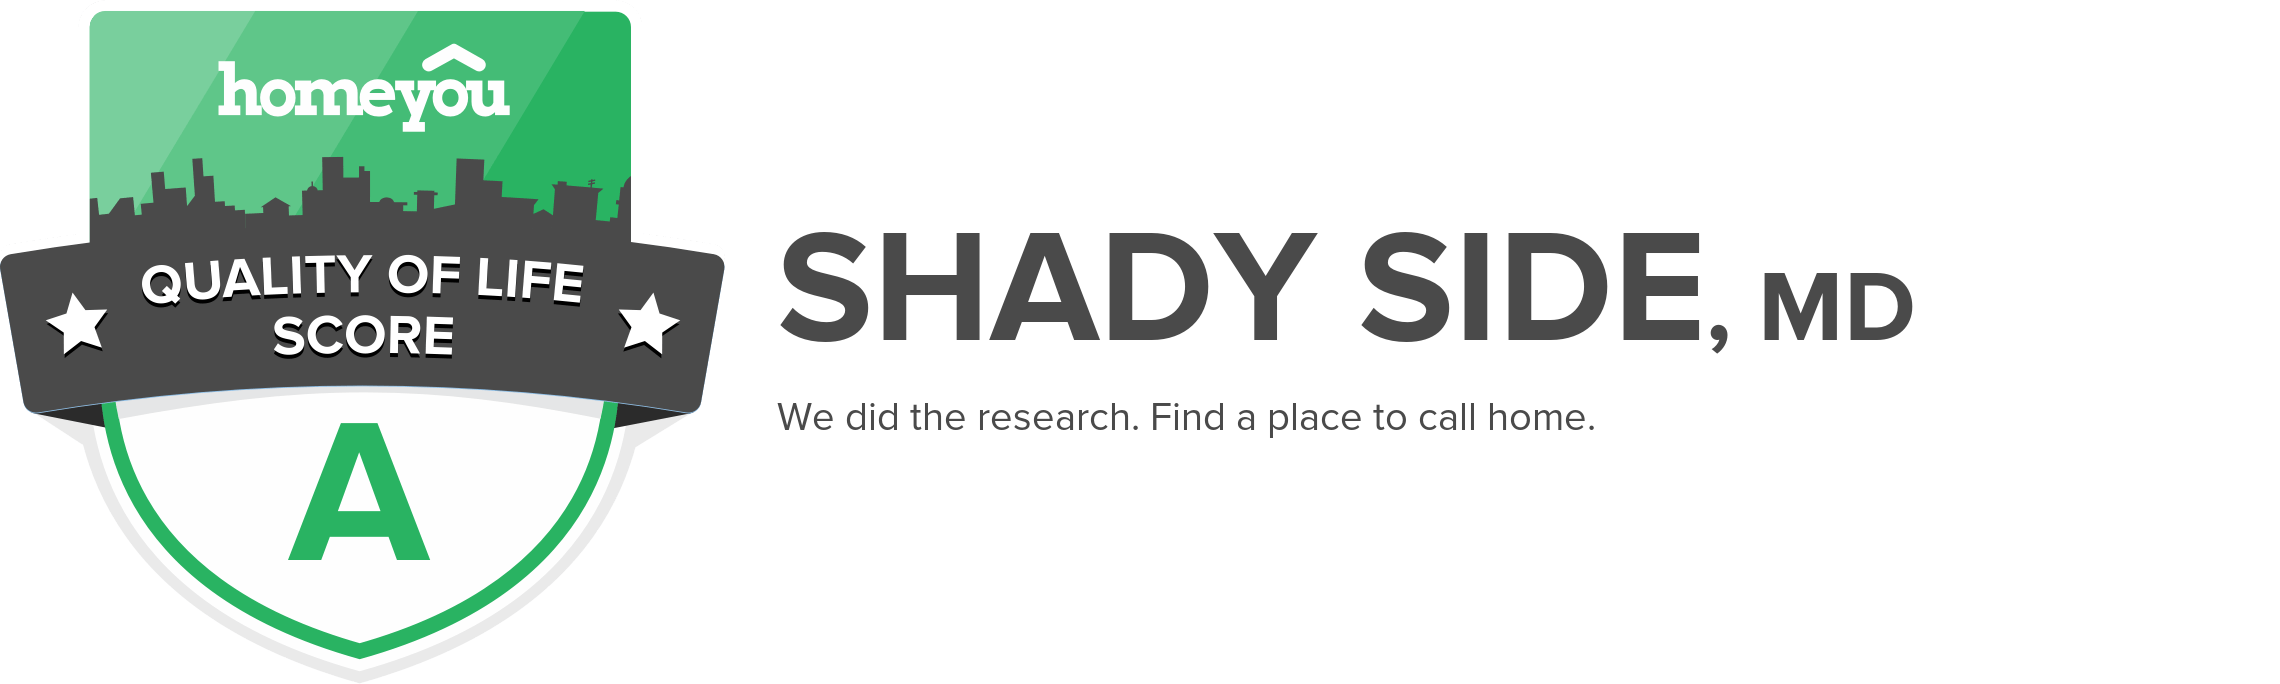 Shady Side, MD